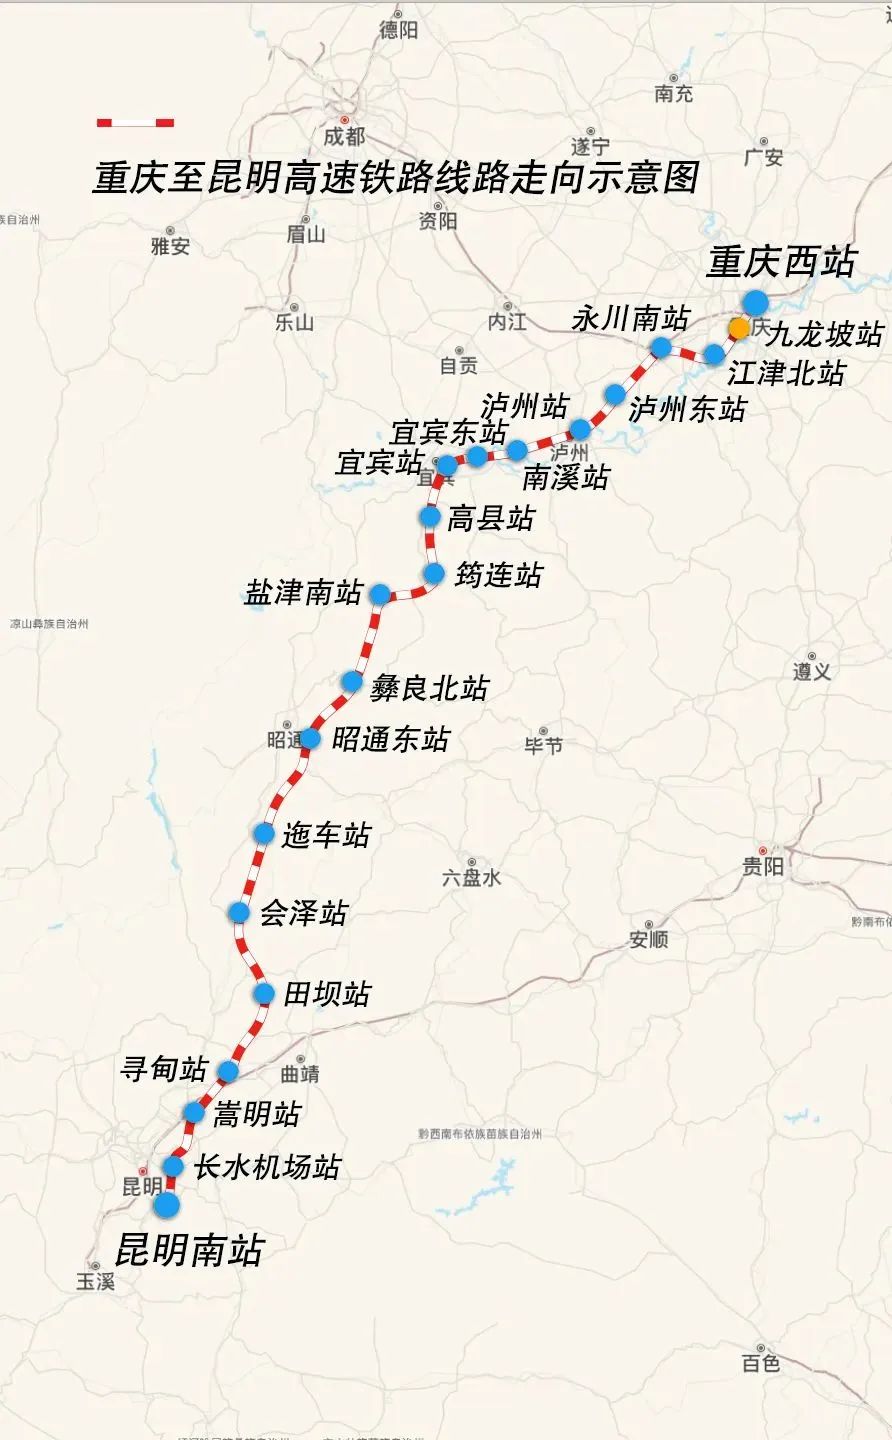 沪渝蓉沿江高铁通车后重庆到上海大约6至7小时可达7月11日沪渝蓉沿江